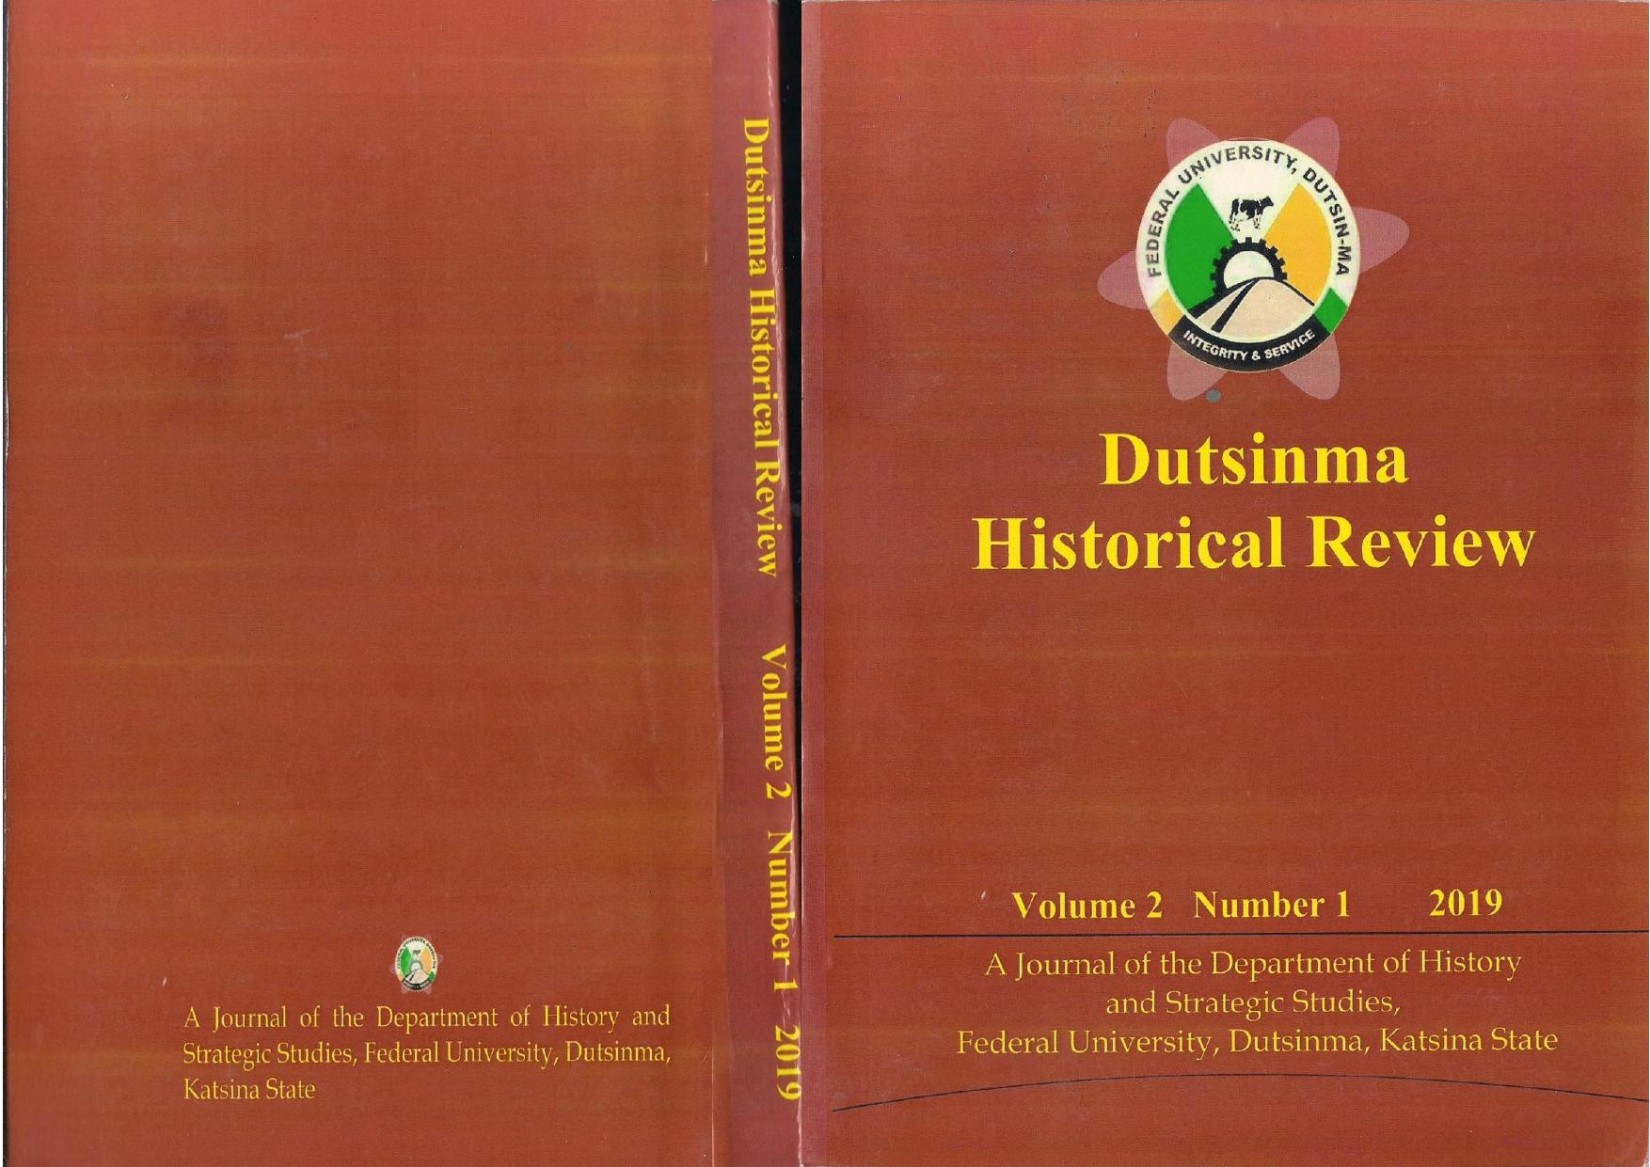 Dutsinma Historical Review 2019